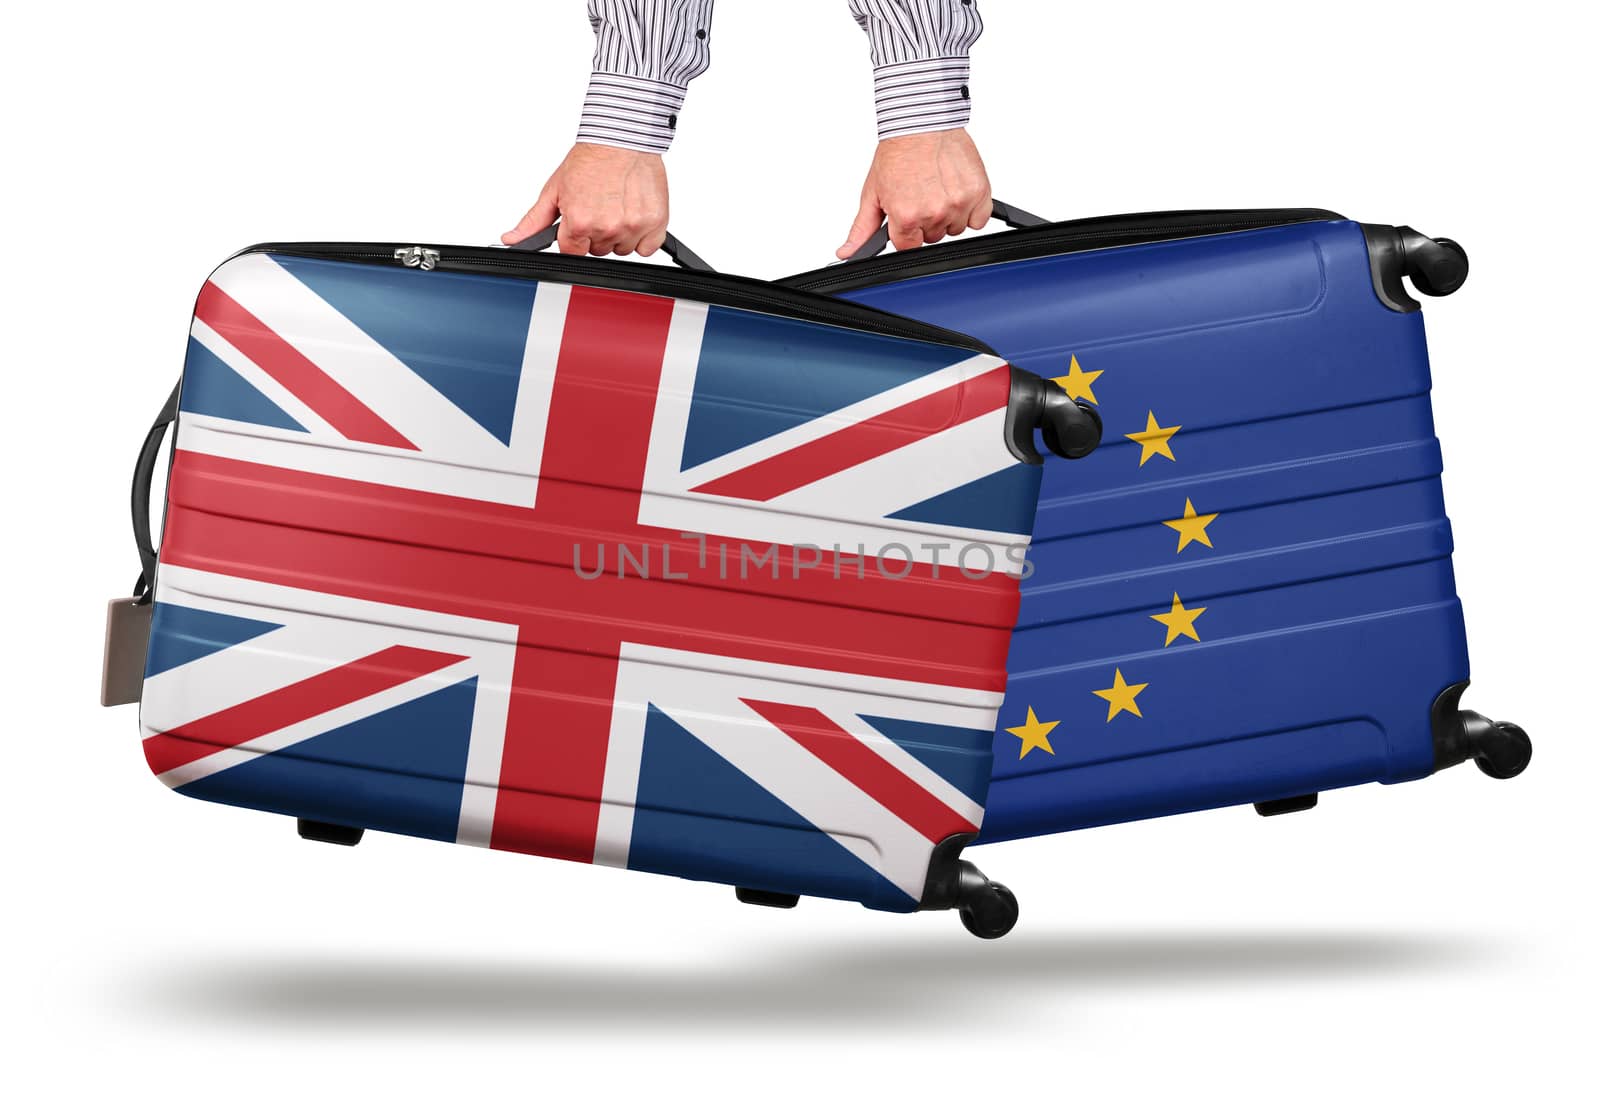 Modern suitcase Union Jack leaving EU concept by anterovium